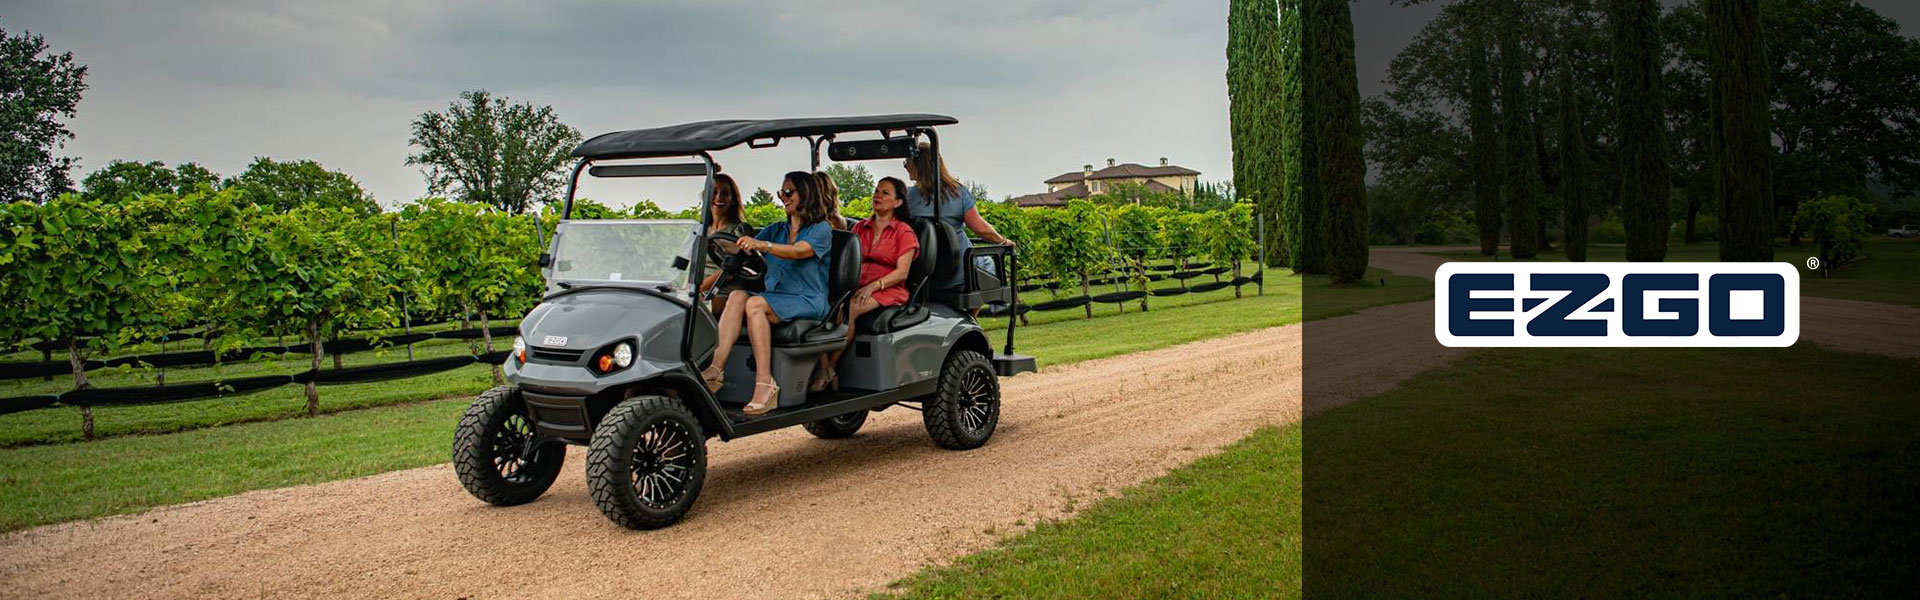 E-Z-GO Golf Cart Inventory